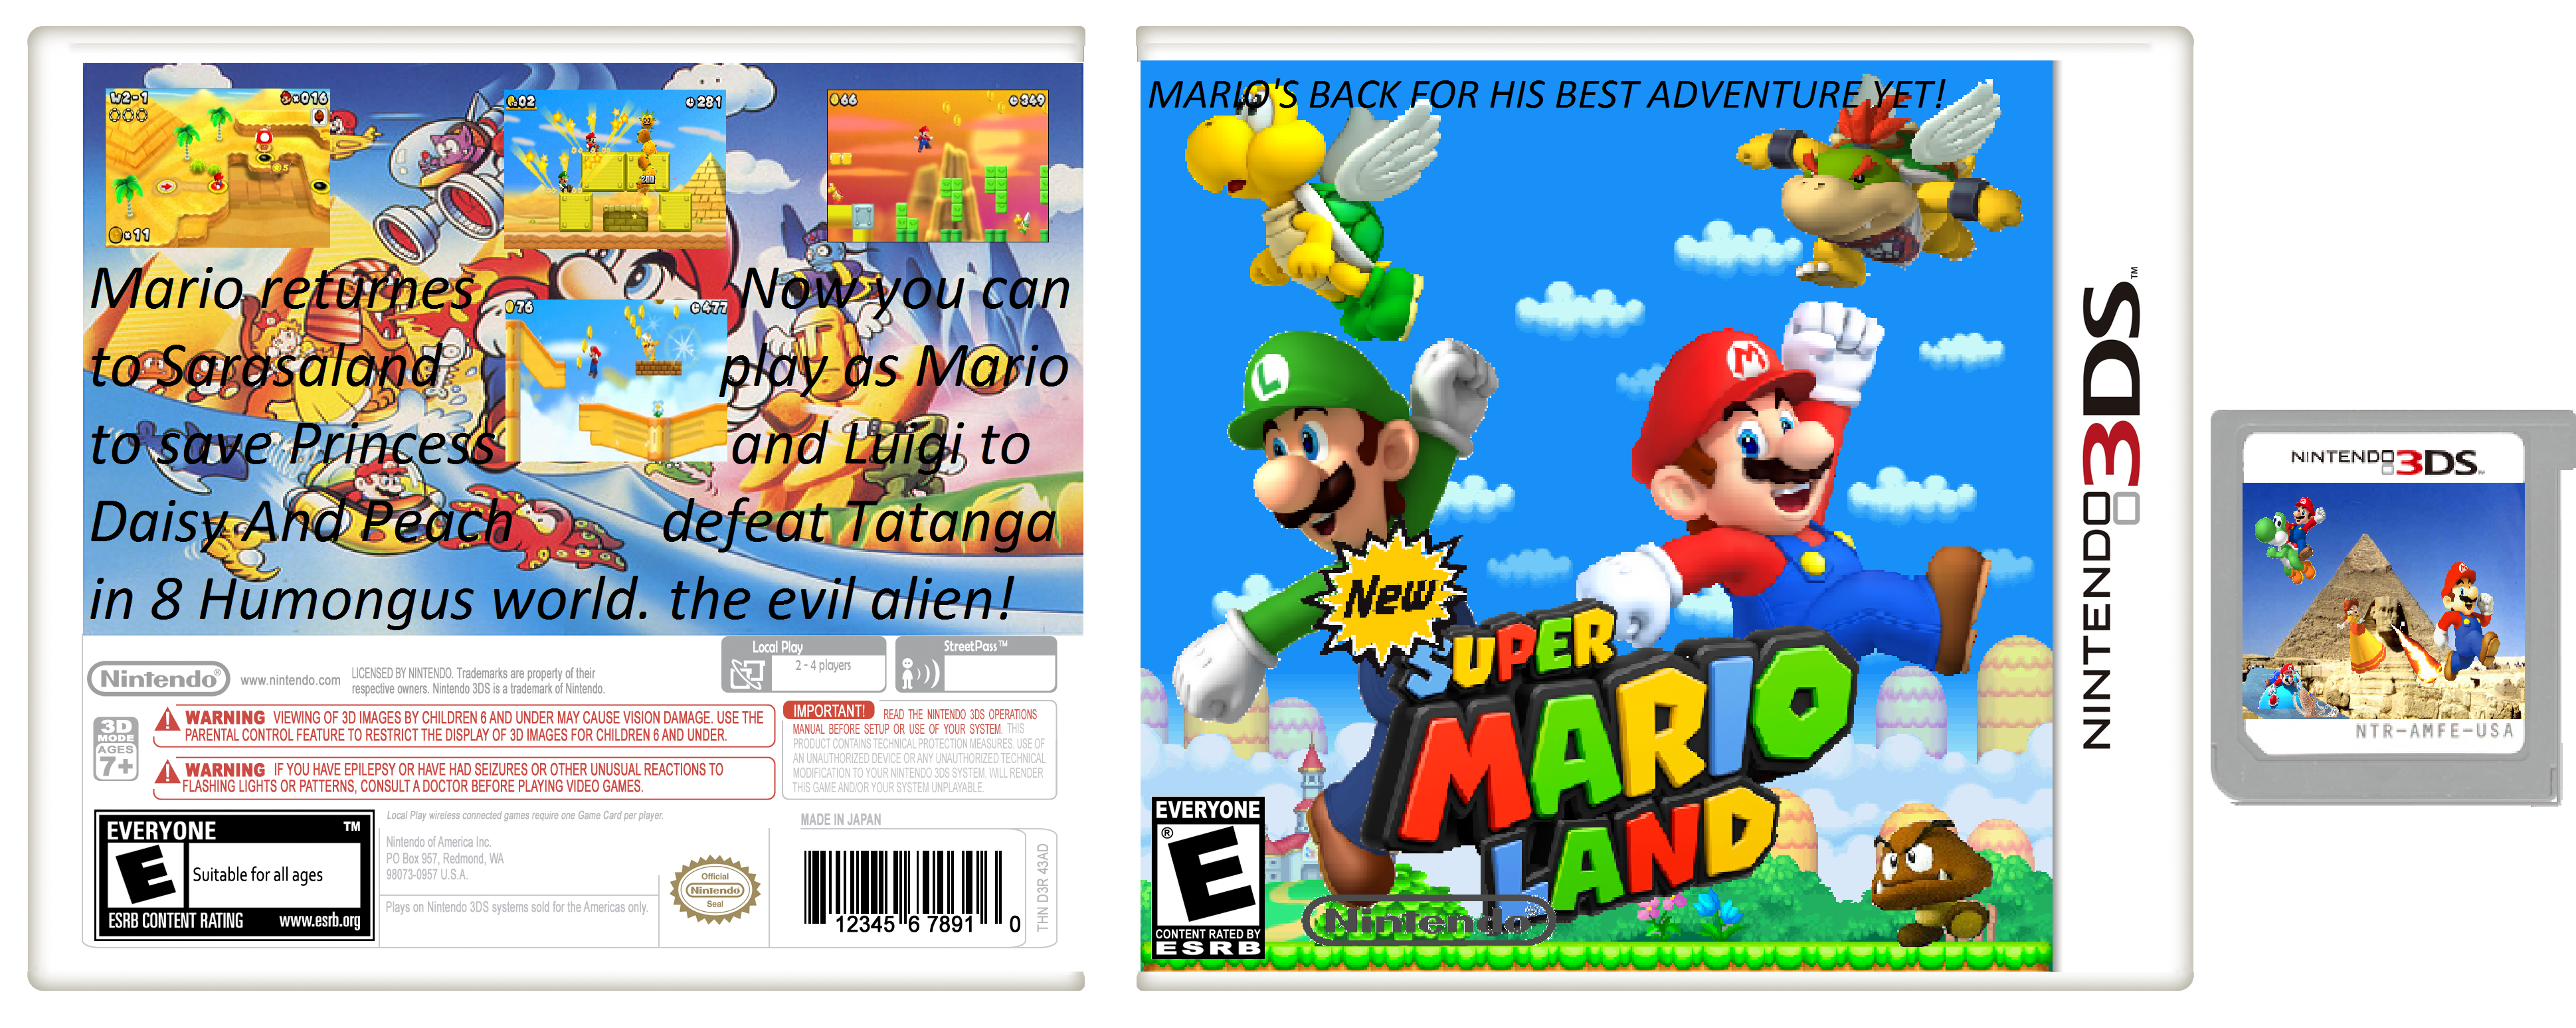 New Super Mario Land. box cover